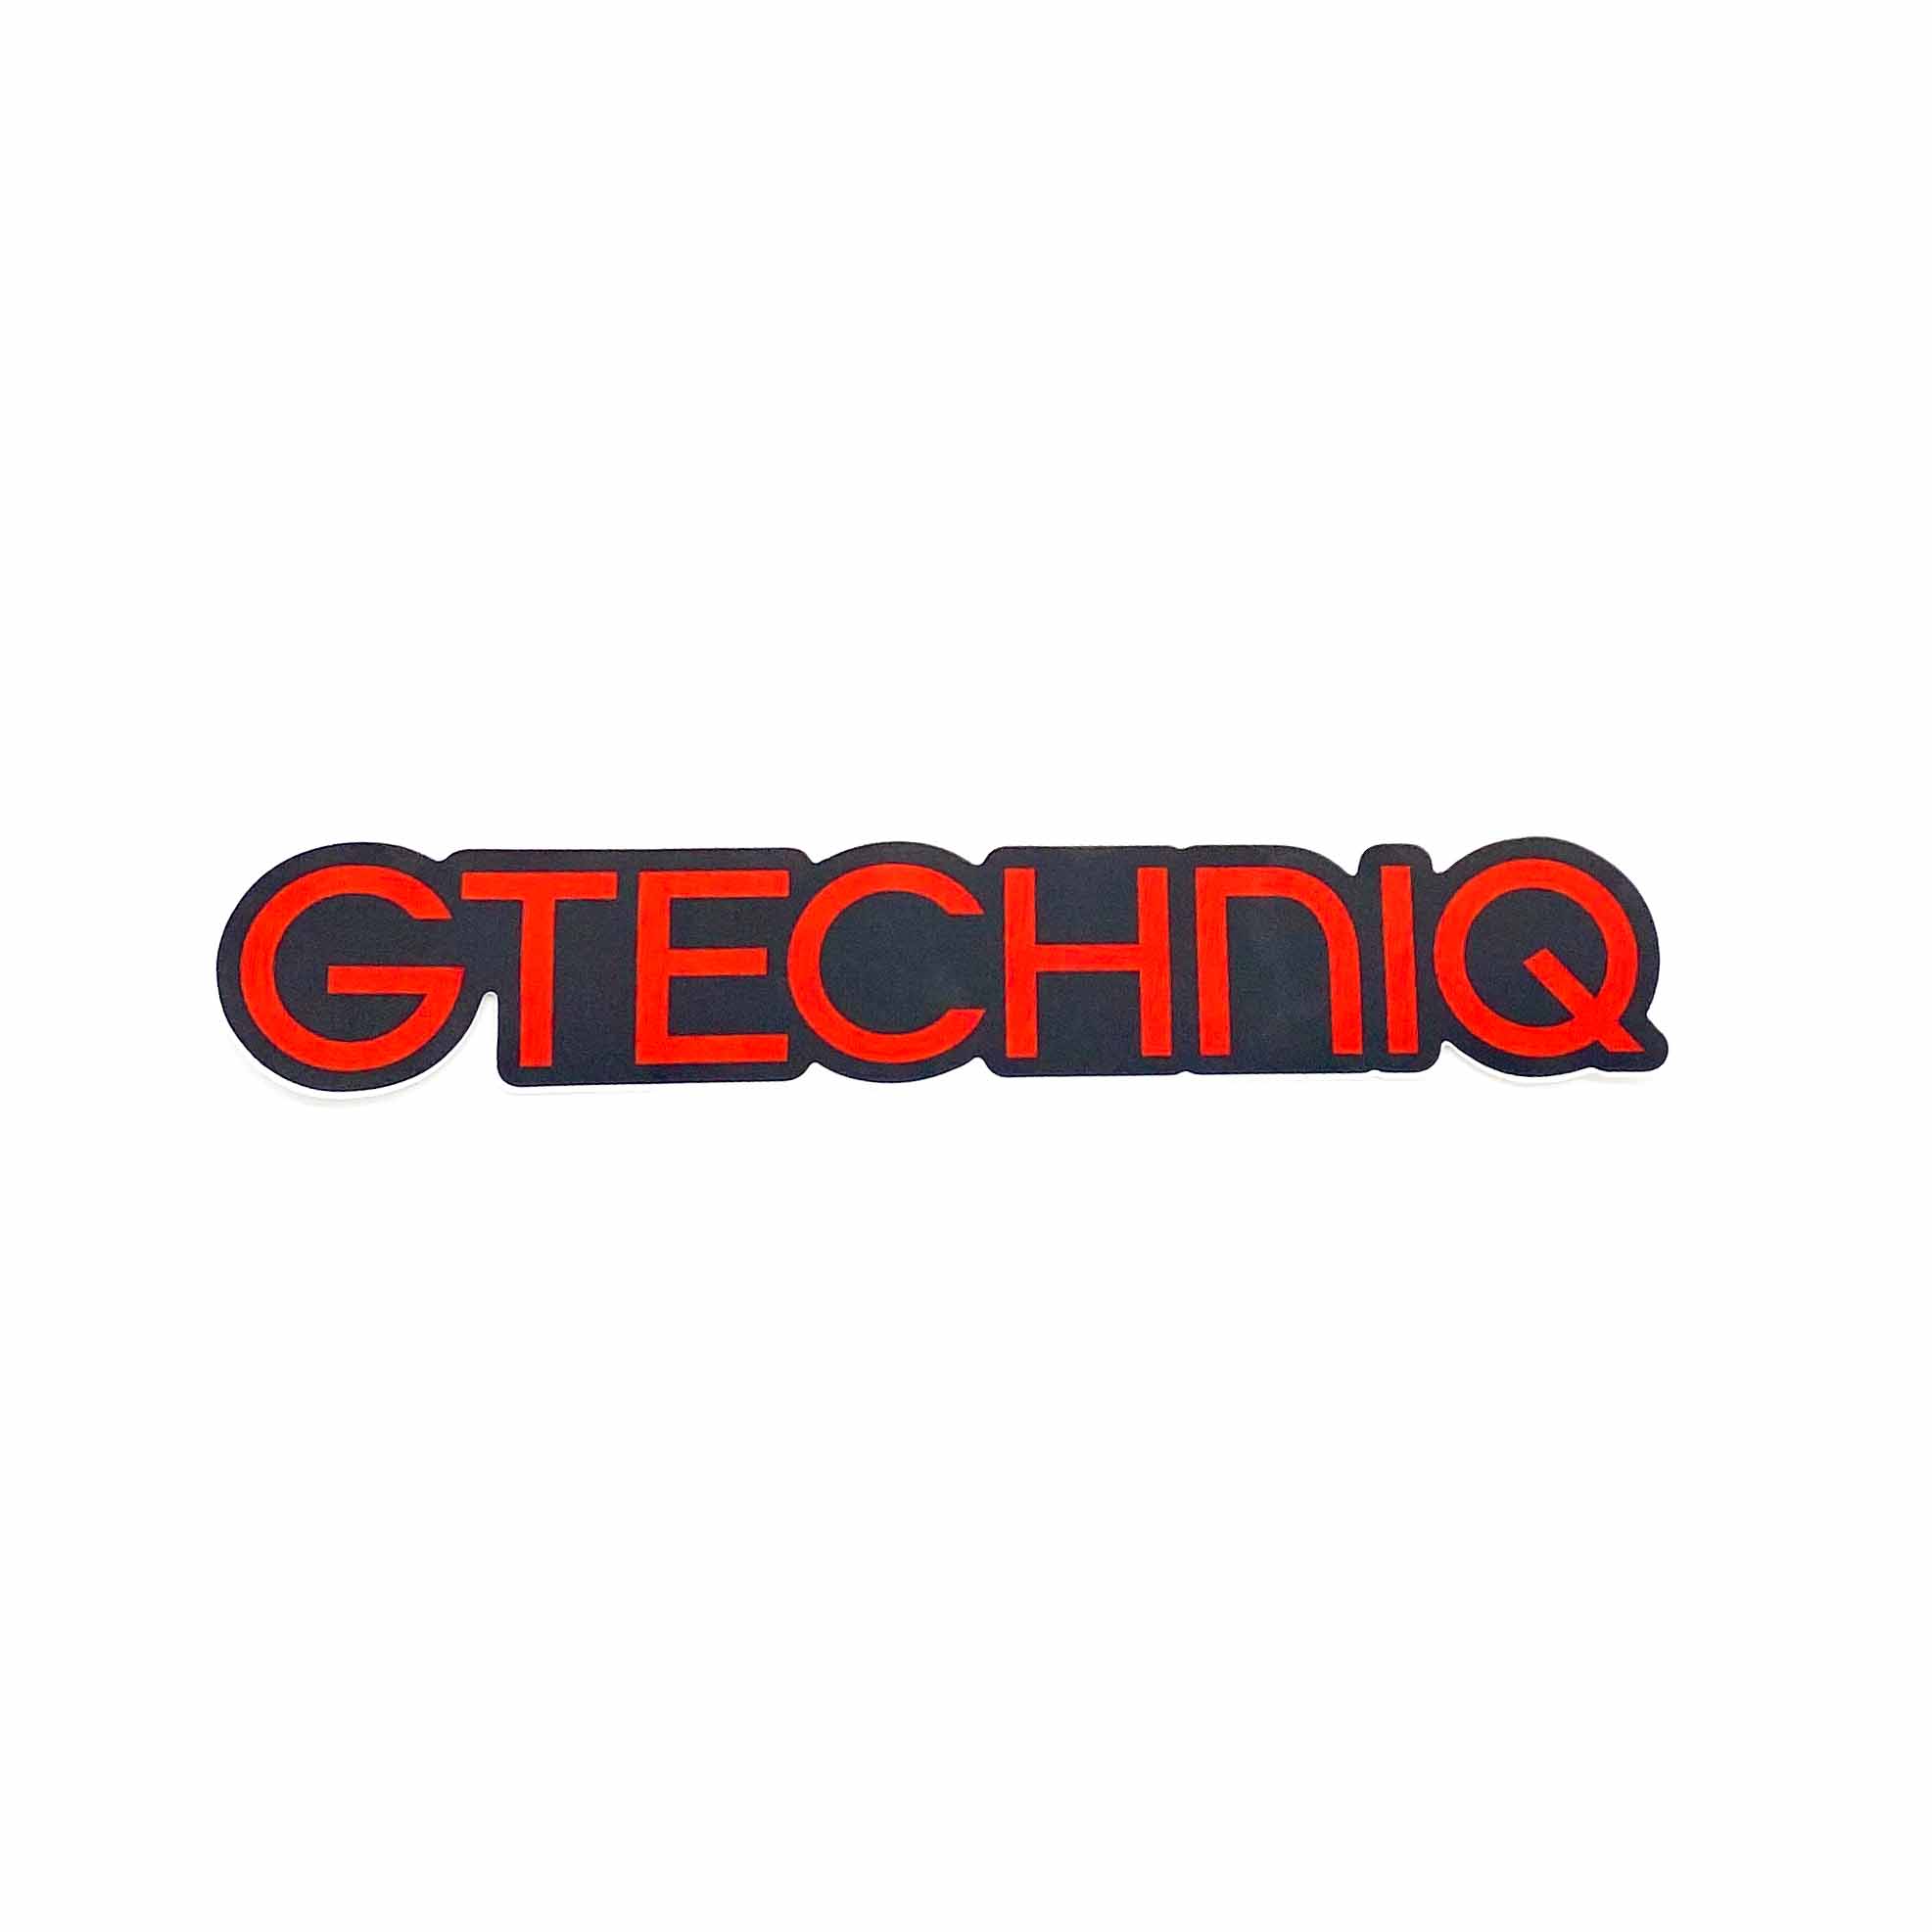 Die Cut Vinyl Logo Sticker (Red & Black) - Gtechniq USA